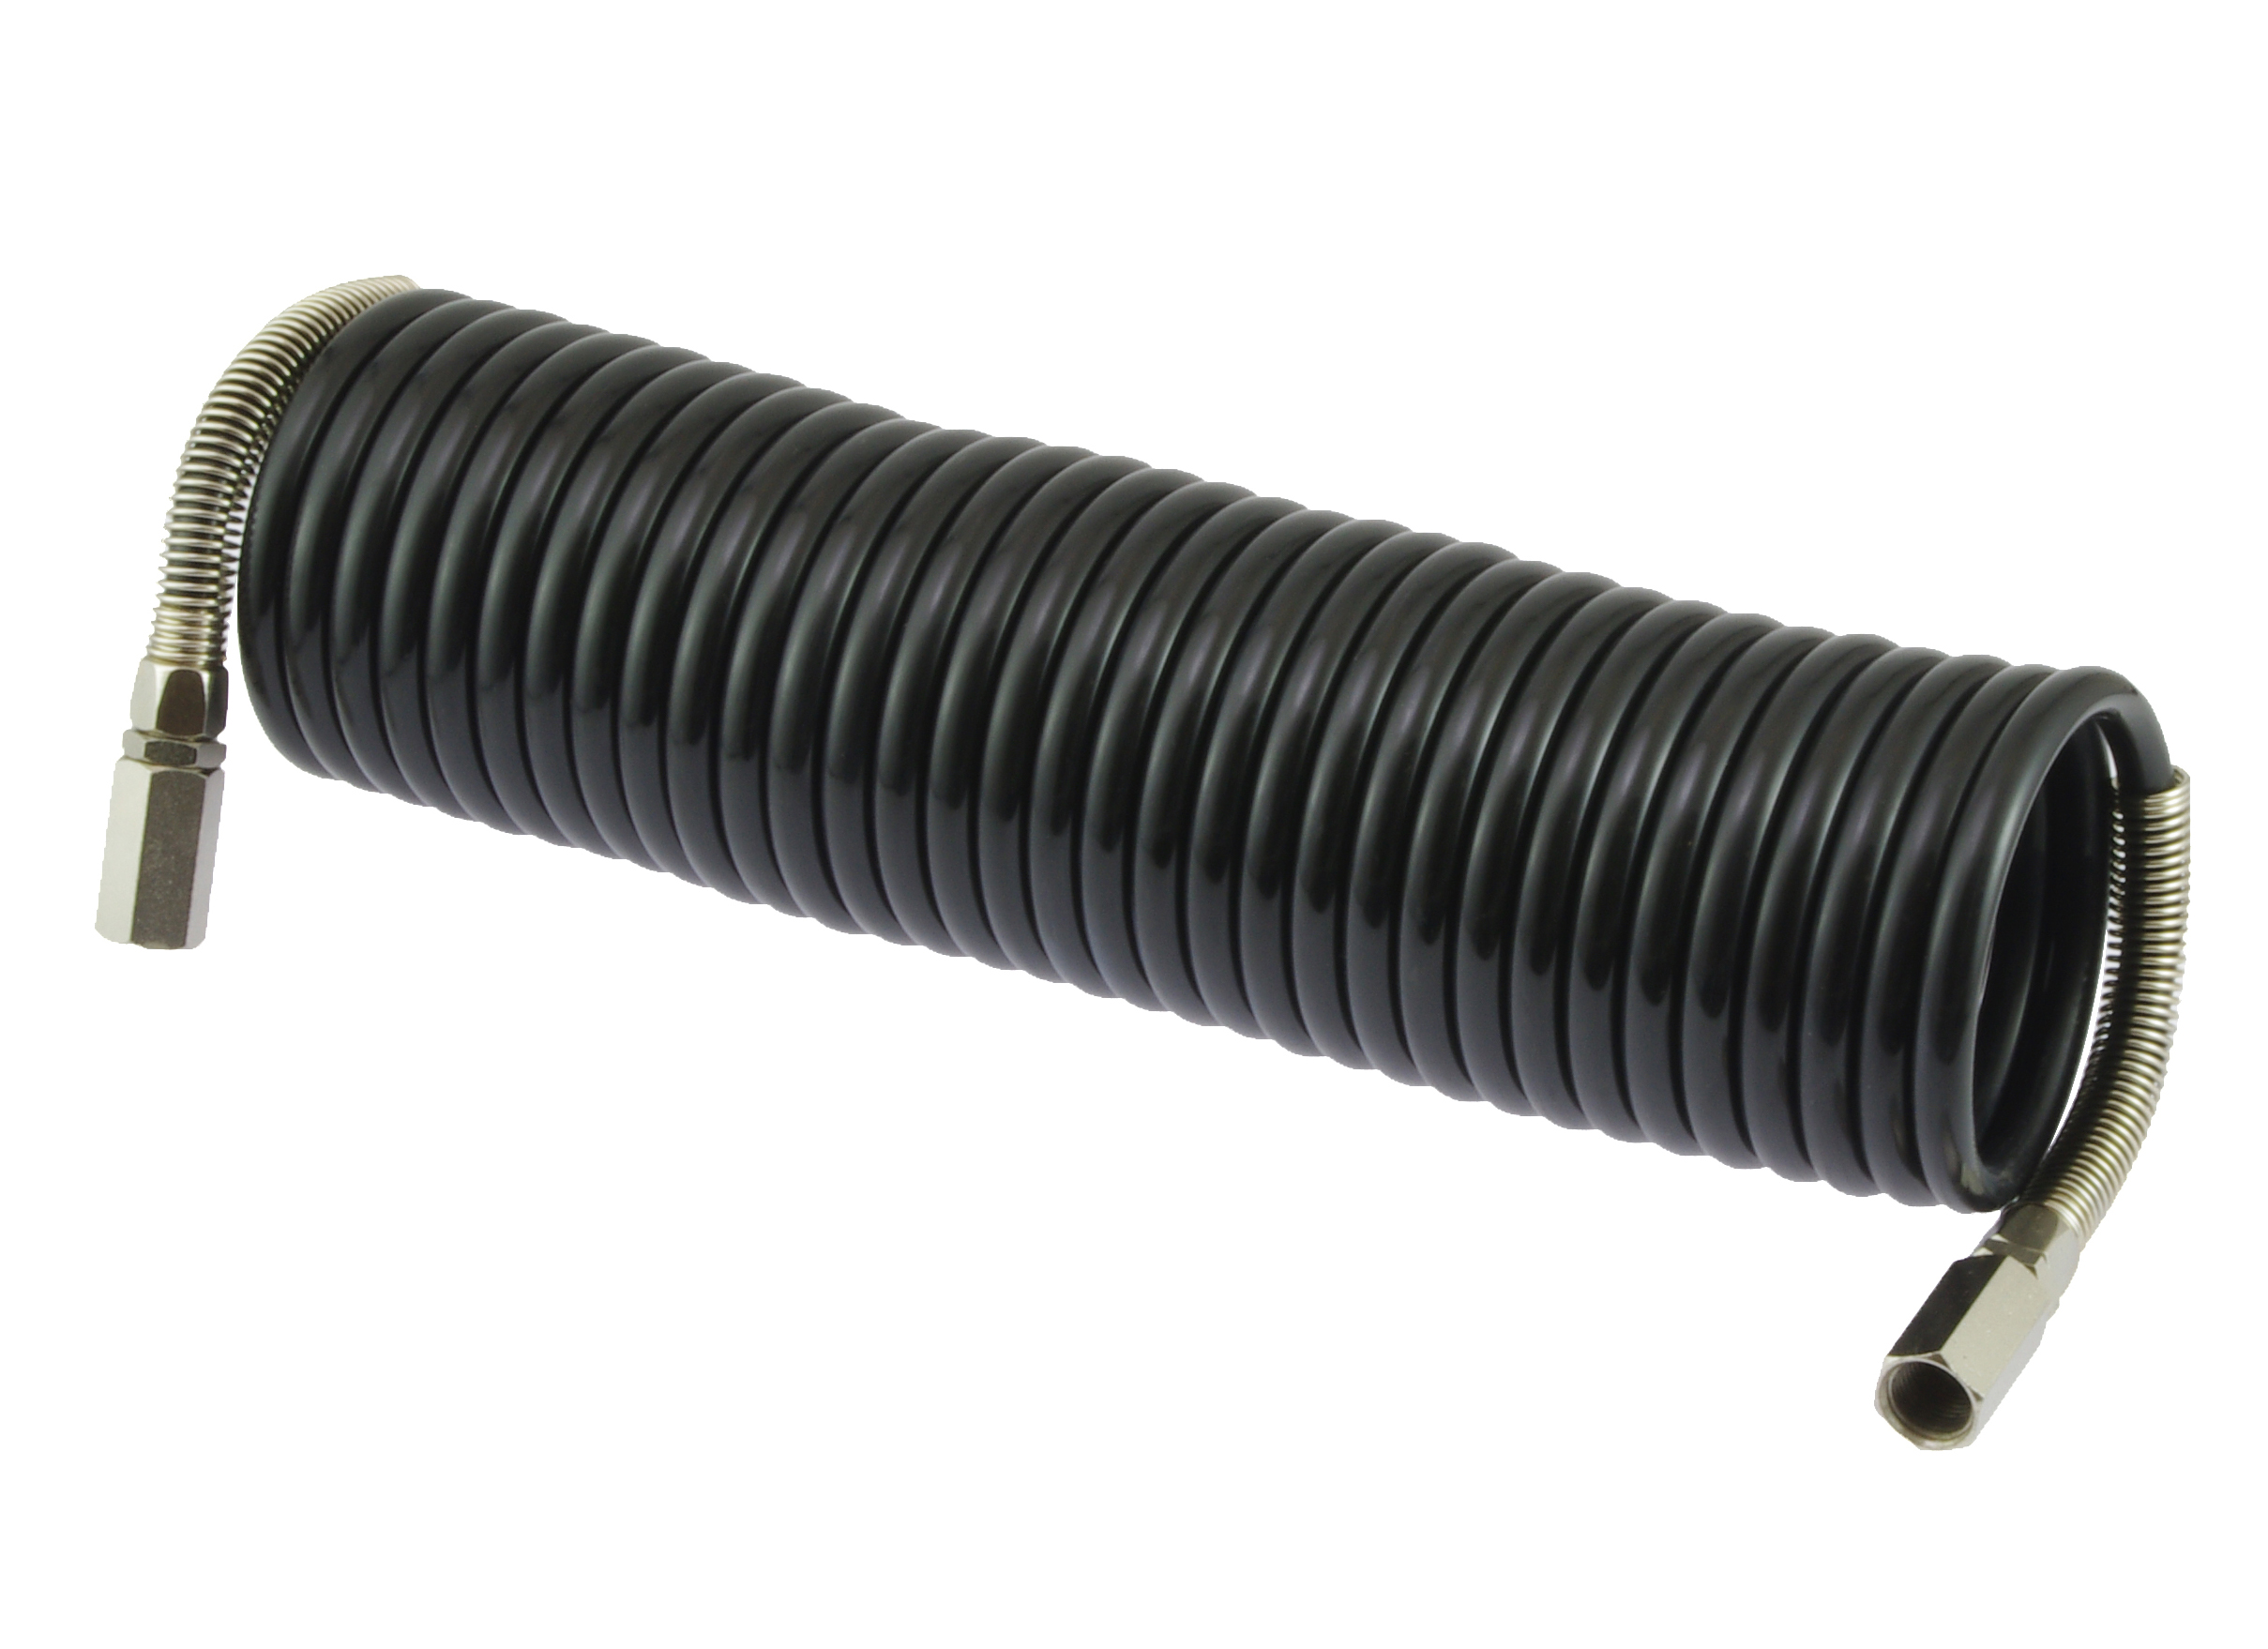 Spirale hose black G1/4“i-G1/4“i